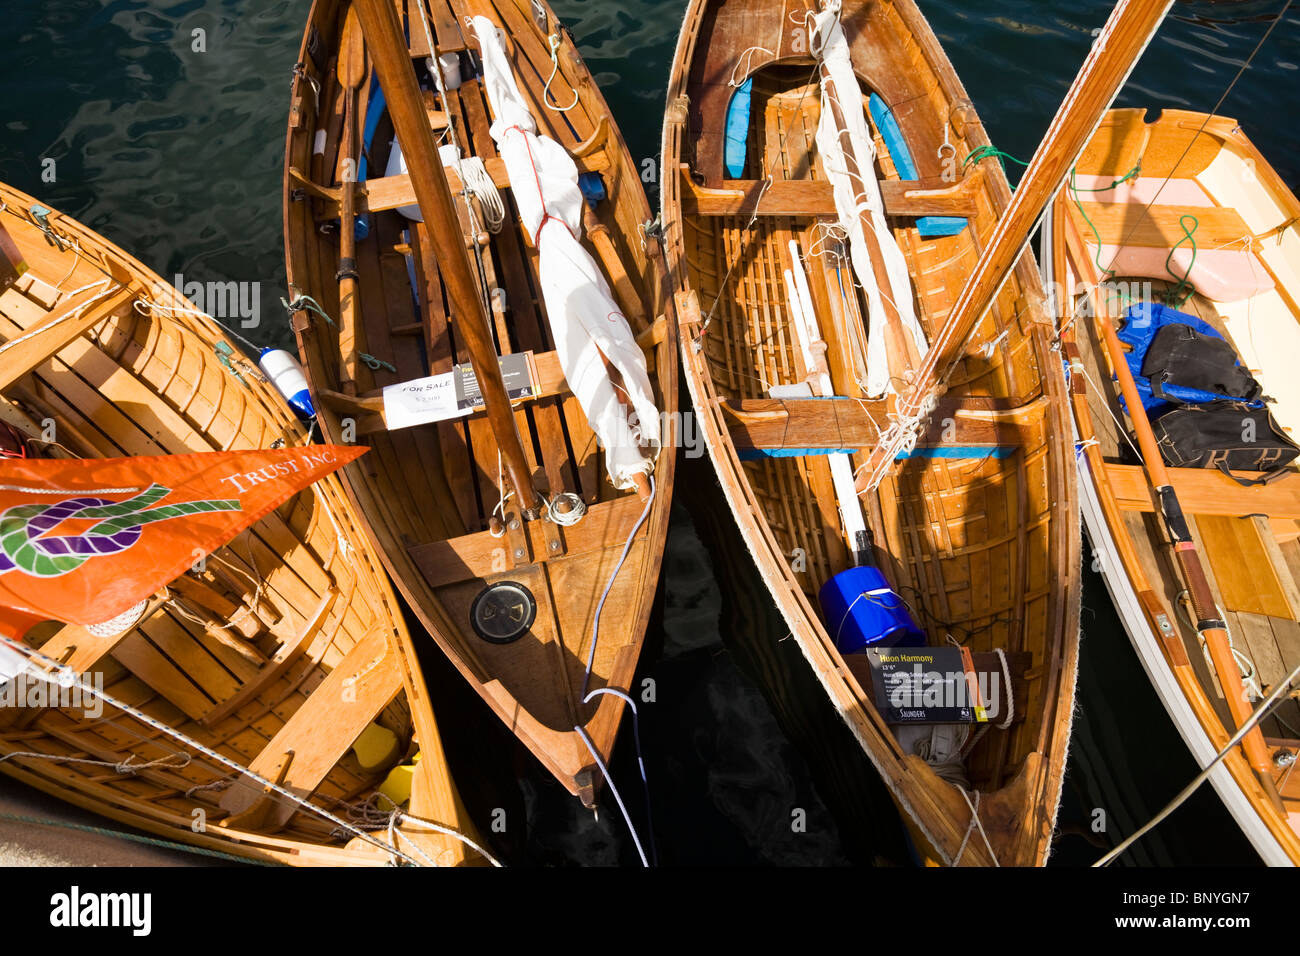 Holzboote am Constitution Dock, während die Wooden Boat Festival.  Hobart, Tasmanien, Australien Stockfoto